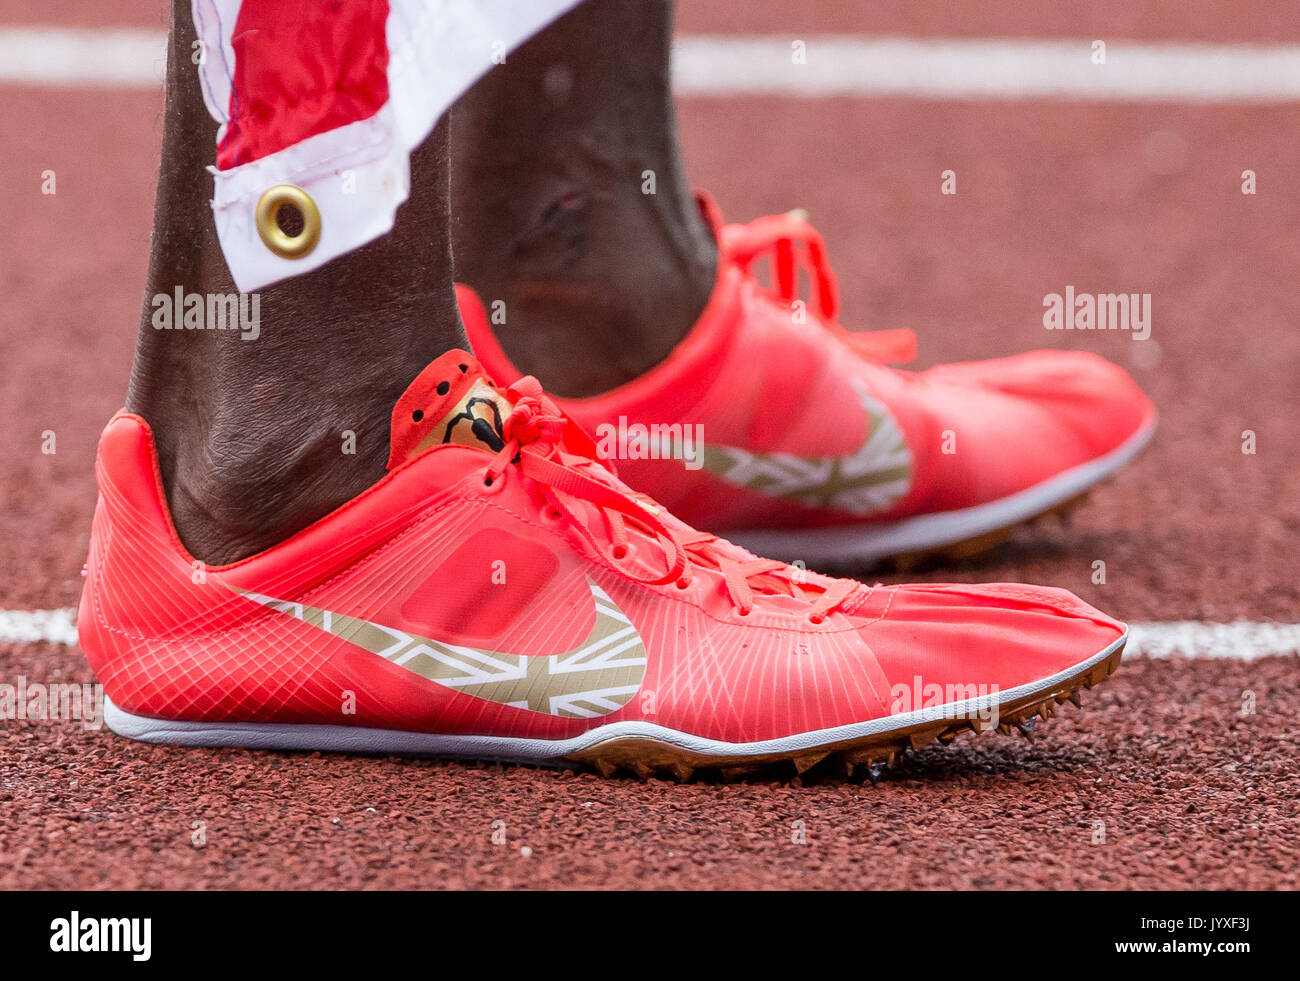 Nike running shoes immagini e fotografie stock ad alta risoluzione - Alamy